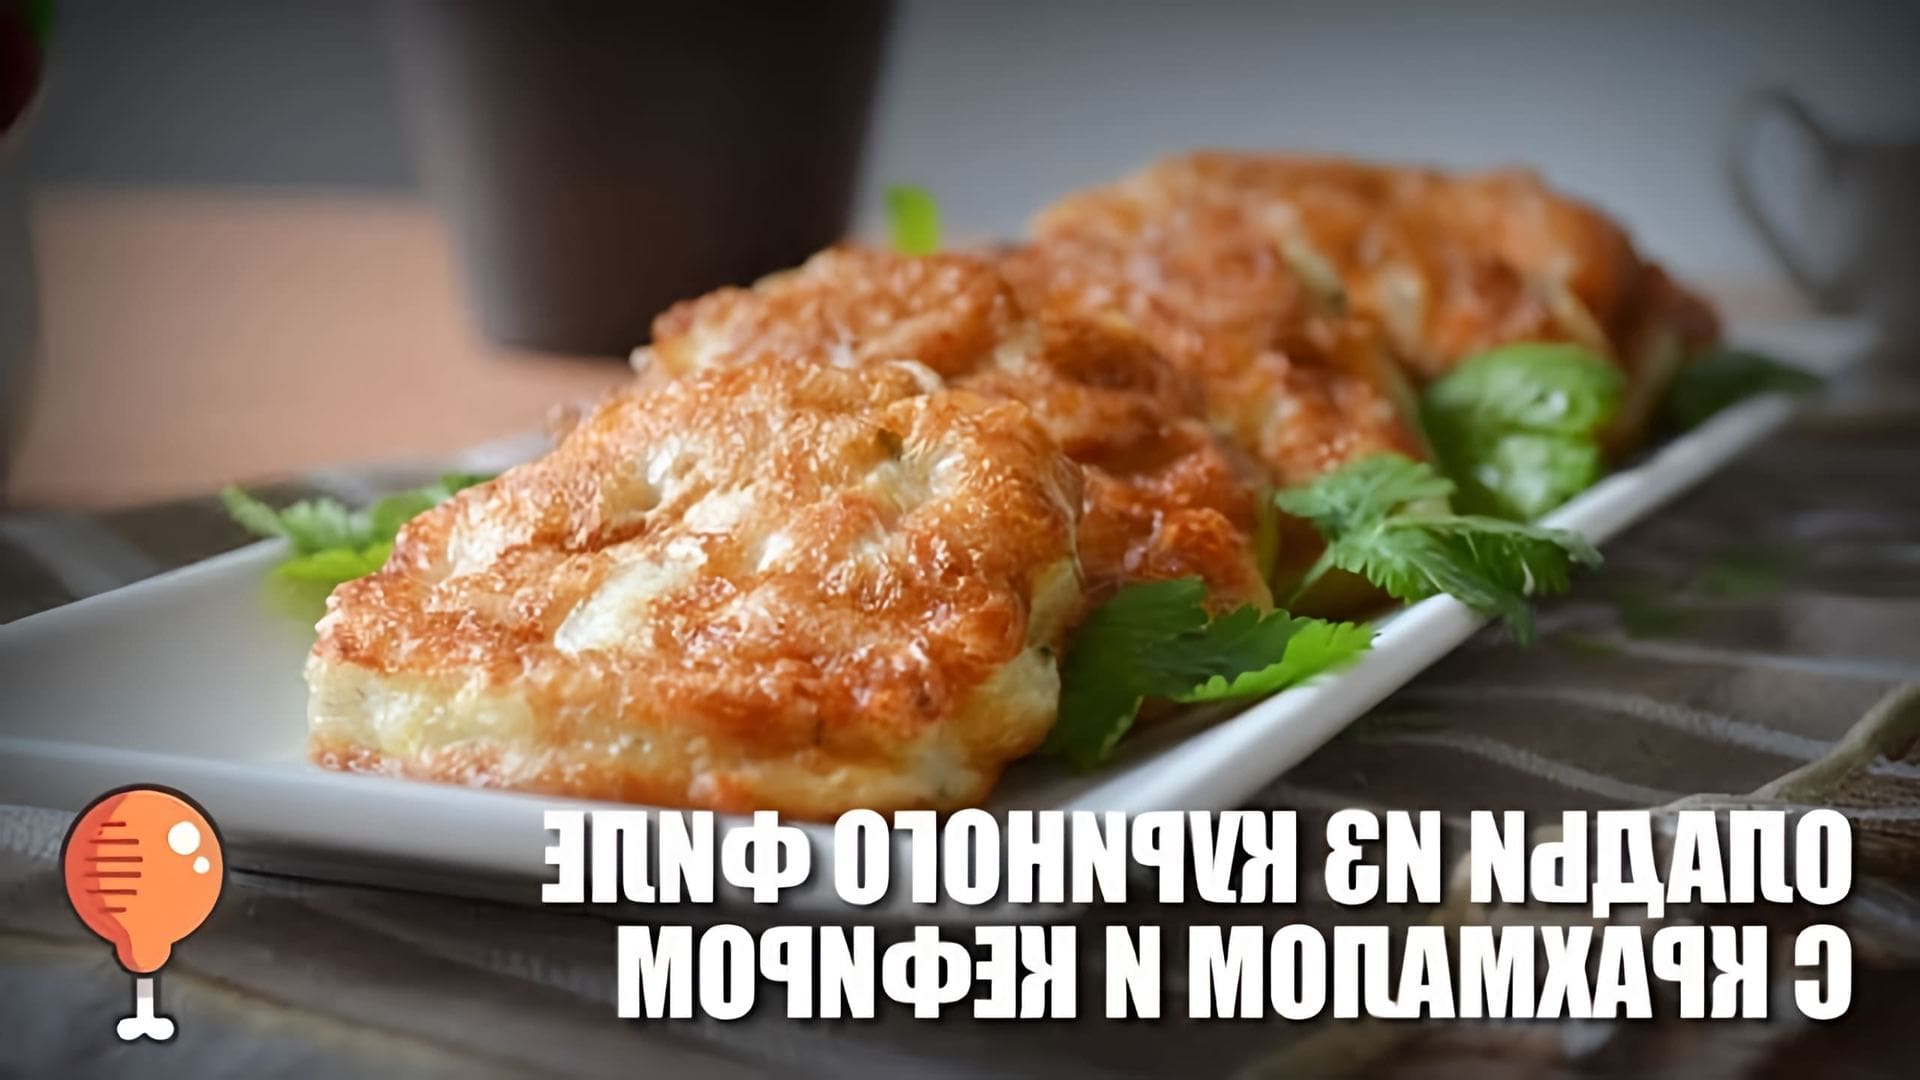 В этом видео демонстрируется рецепт приготовления оладий из куриного филе с крахмалом и кефиром